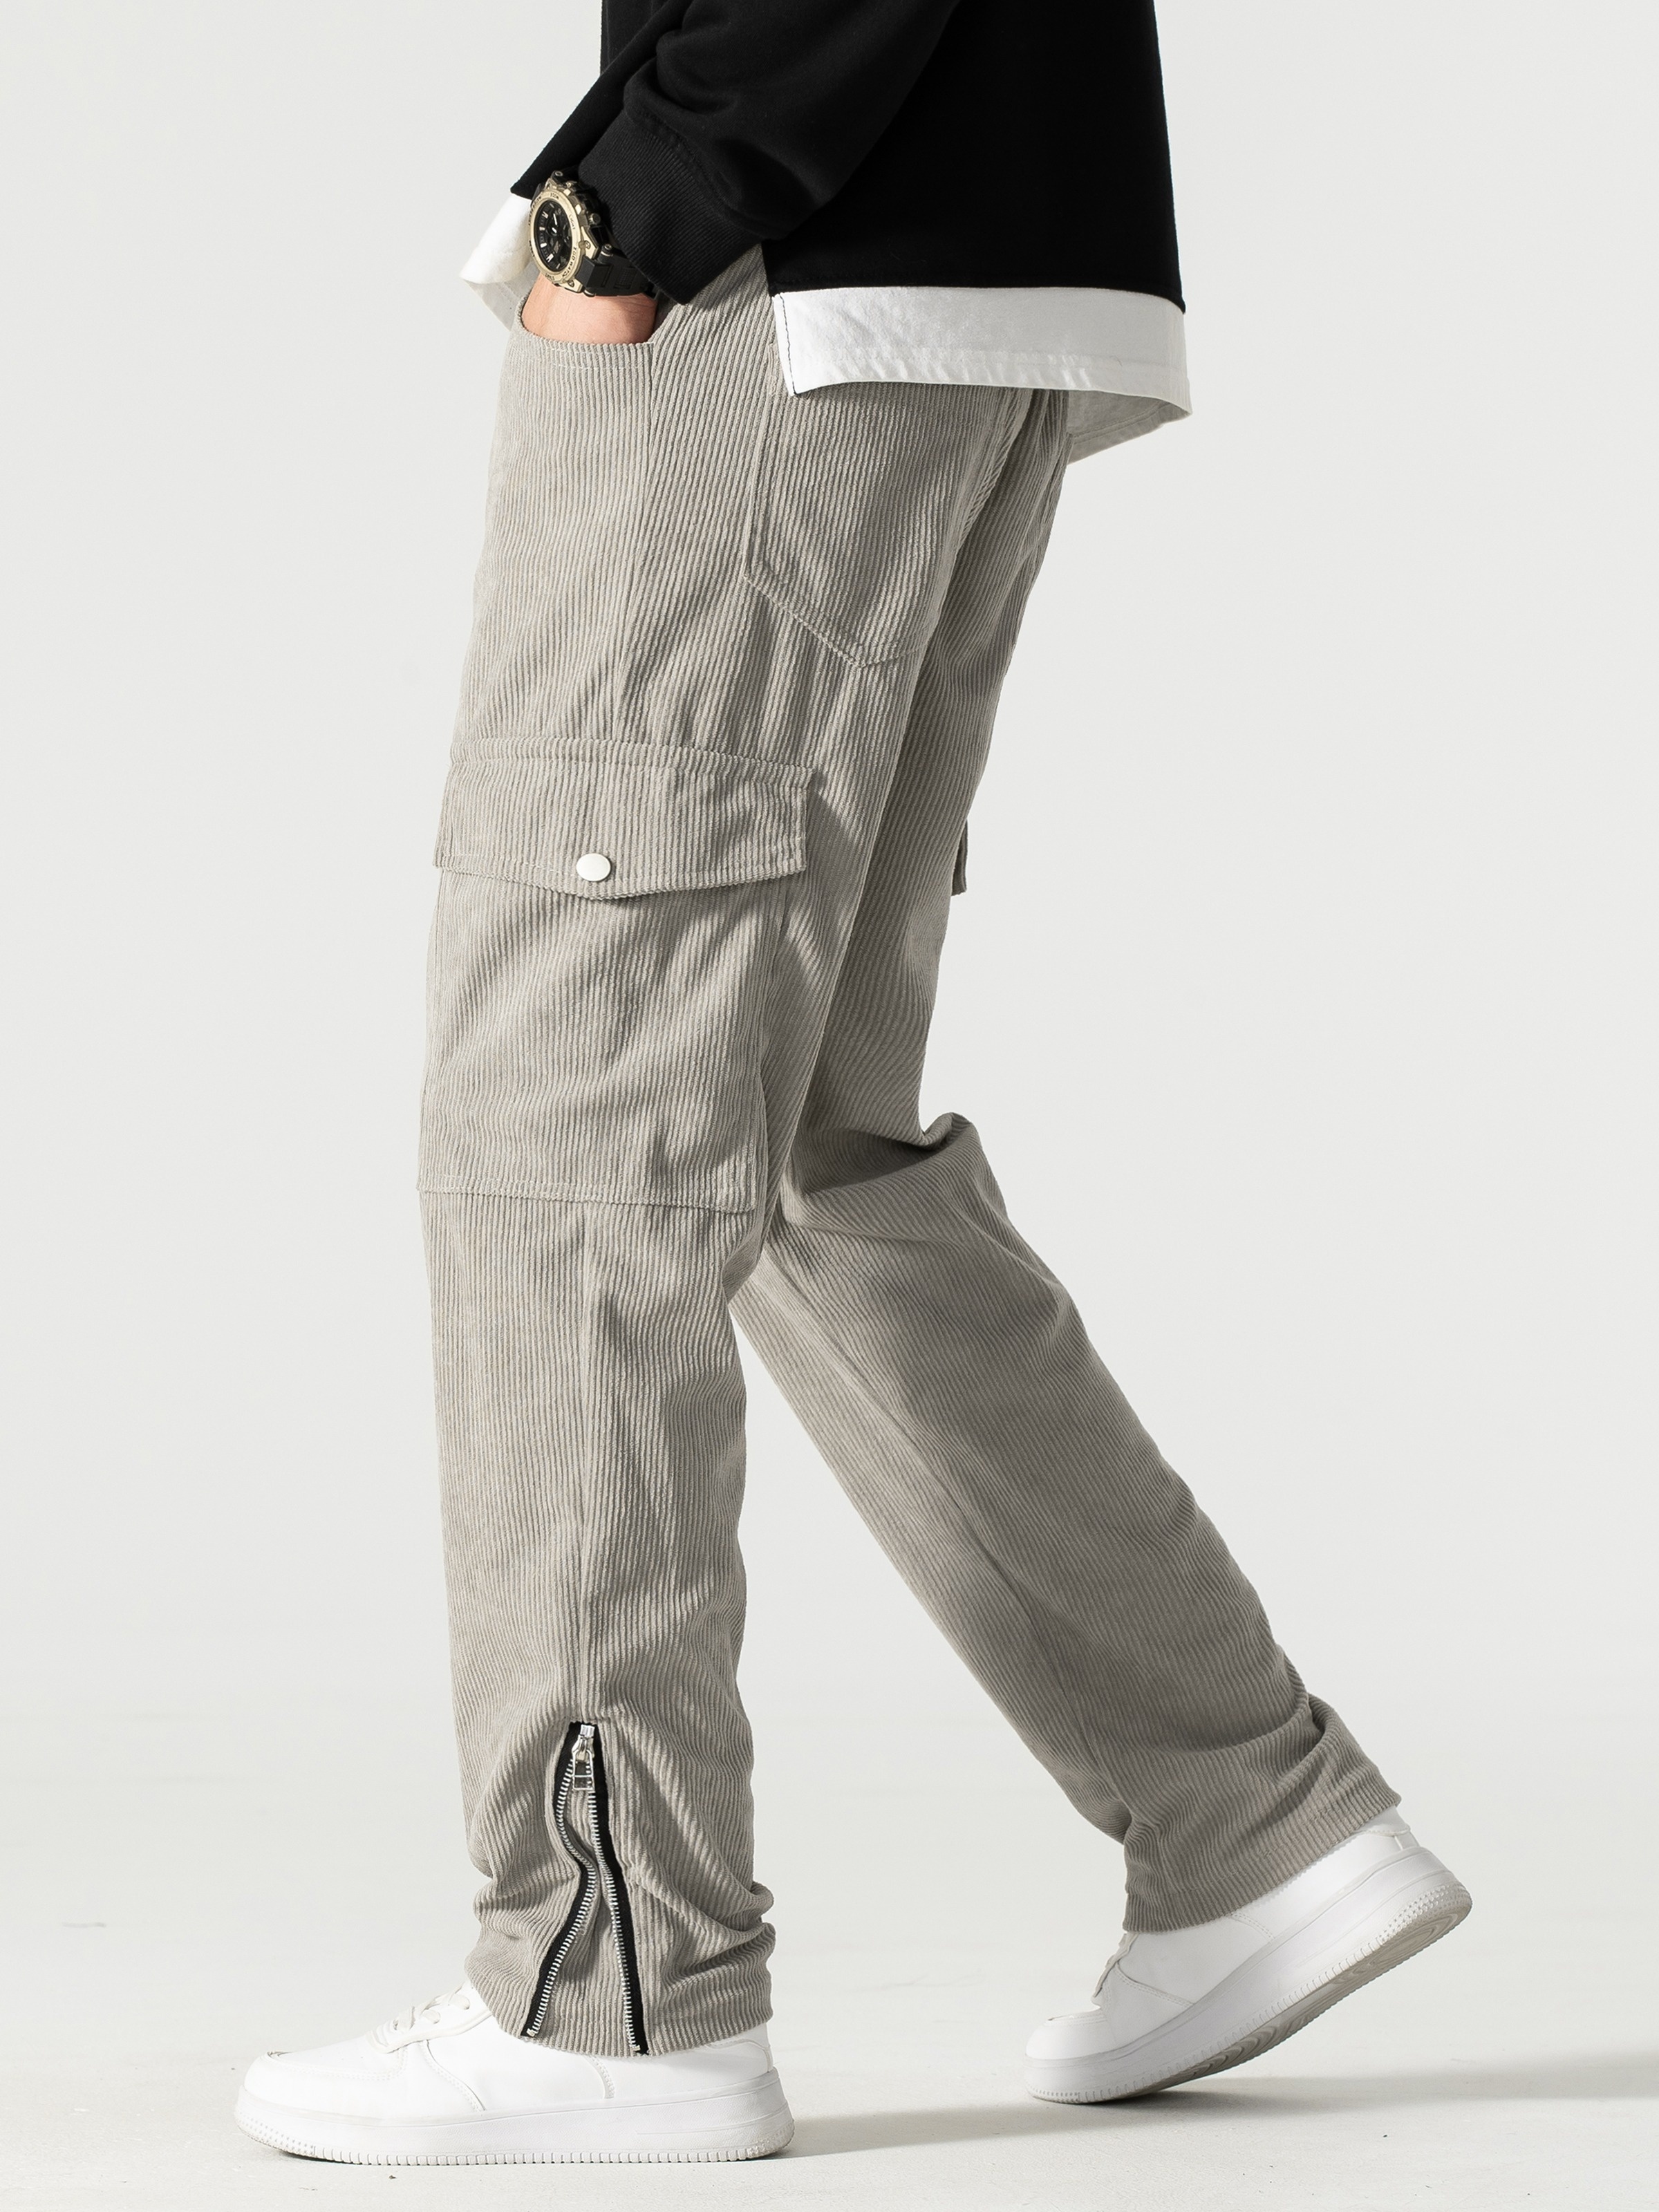 Carhartt Lightweight Casual Pants for Men